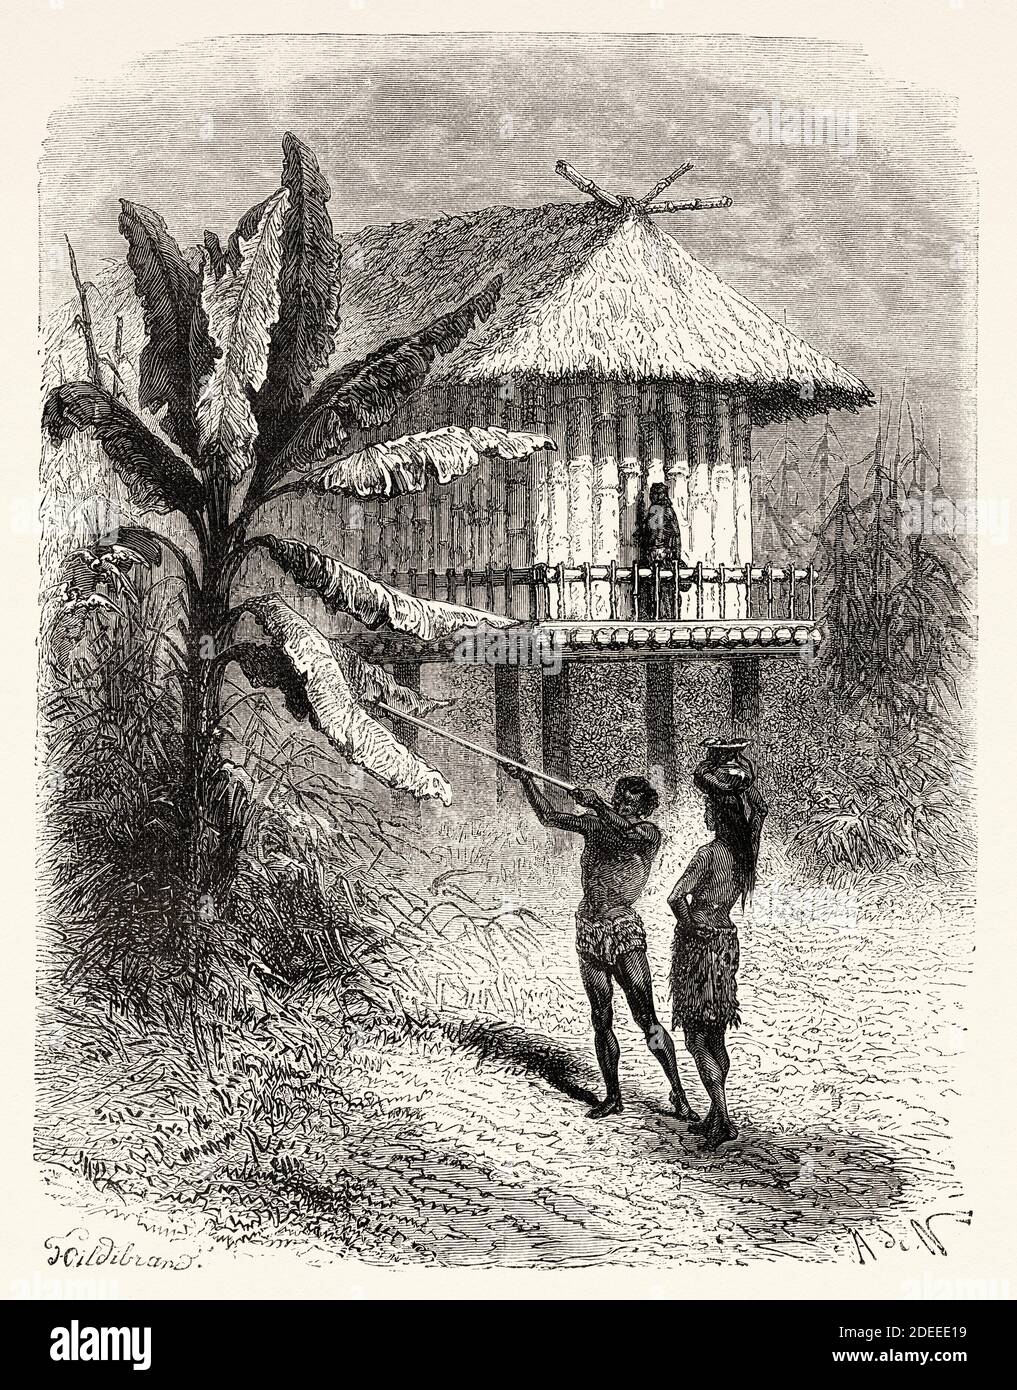 Abitanti di Rio Verde, Colombia. Antica illustrazione incisa del 19 ° secolo. Viaggio a Nuova Granada con Charles Saffray da El Mundo en la mano 1879 Foto Stock